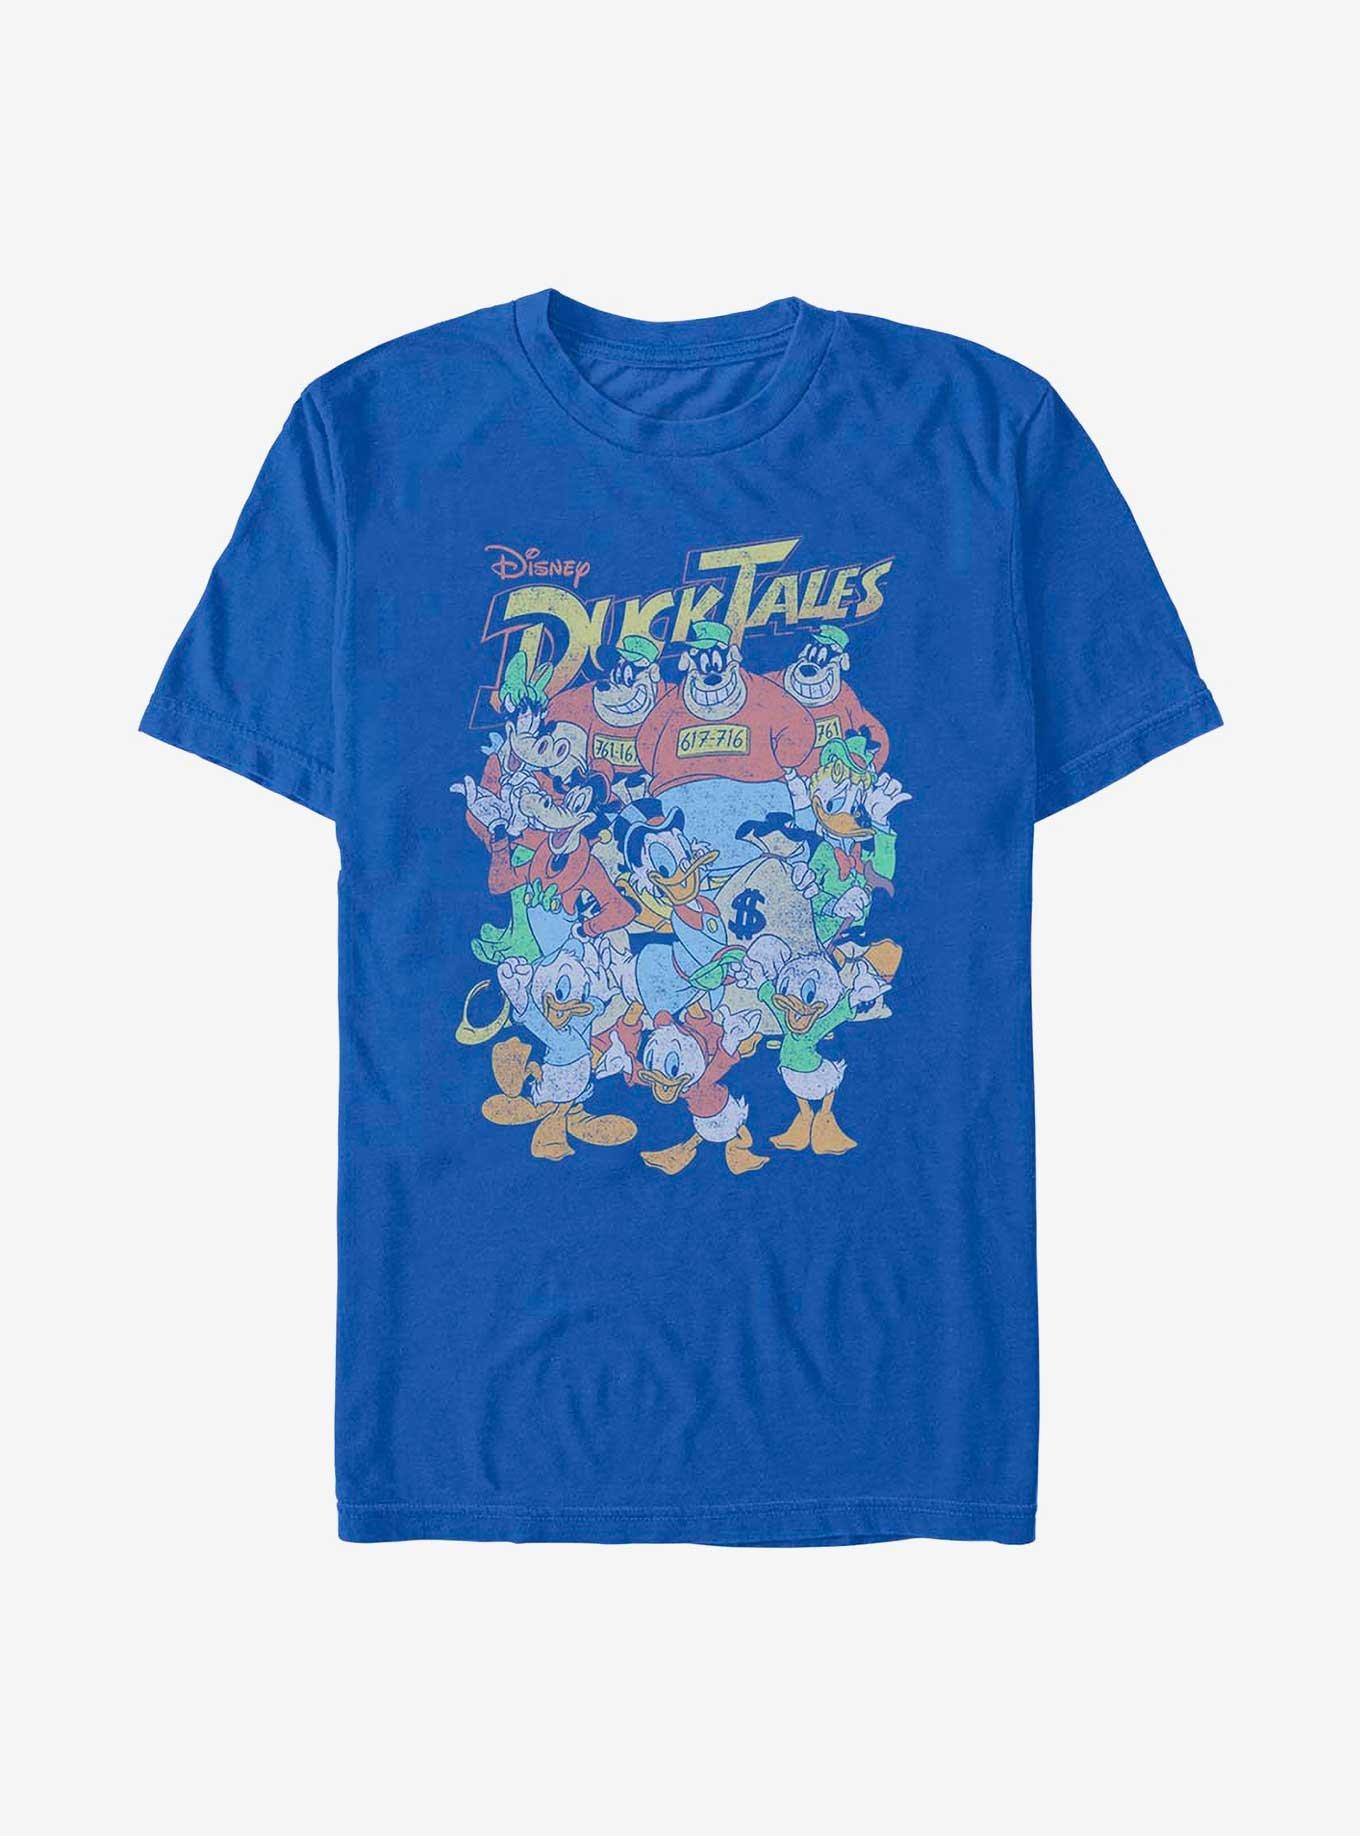 Disney Ducktales Ducktales Crew T-Shirt, ROYAL, hi-res